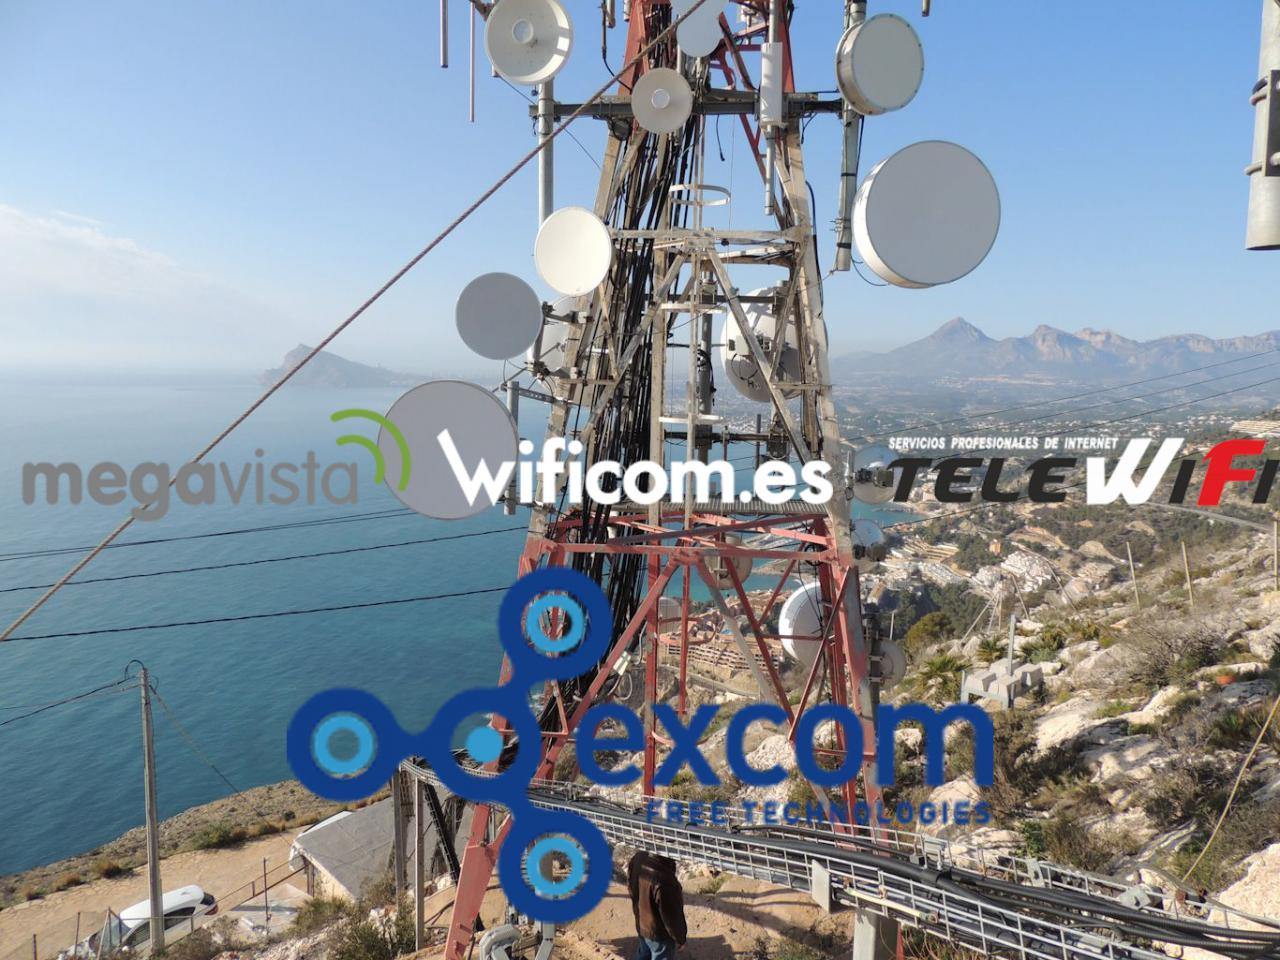 Excom adquiere Megavista, Wificom y Telewifi para seguir creciendo por España